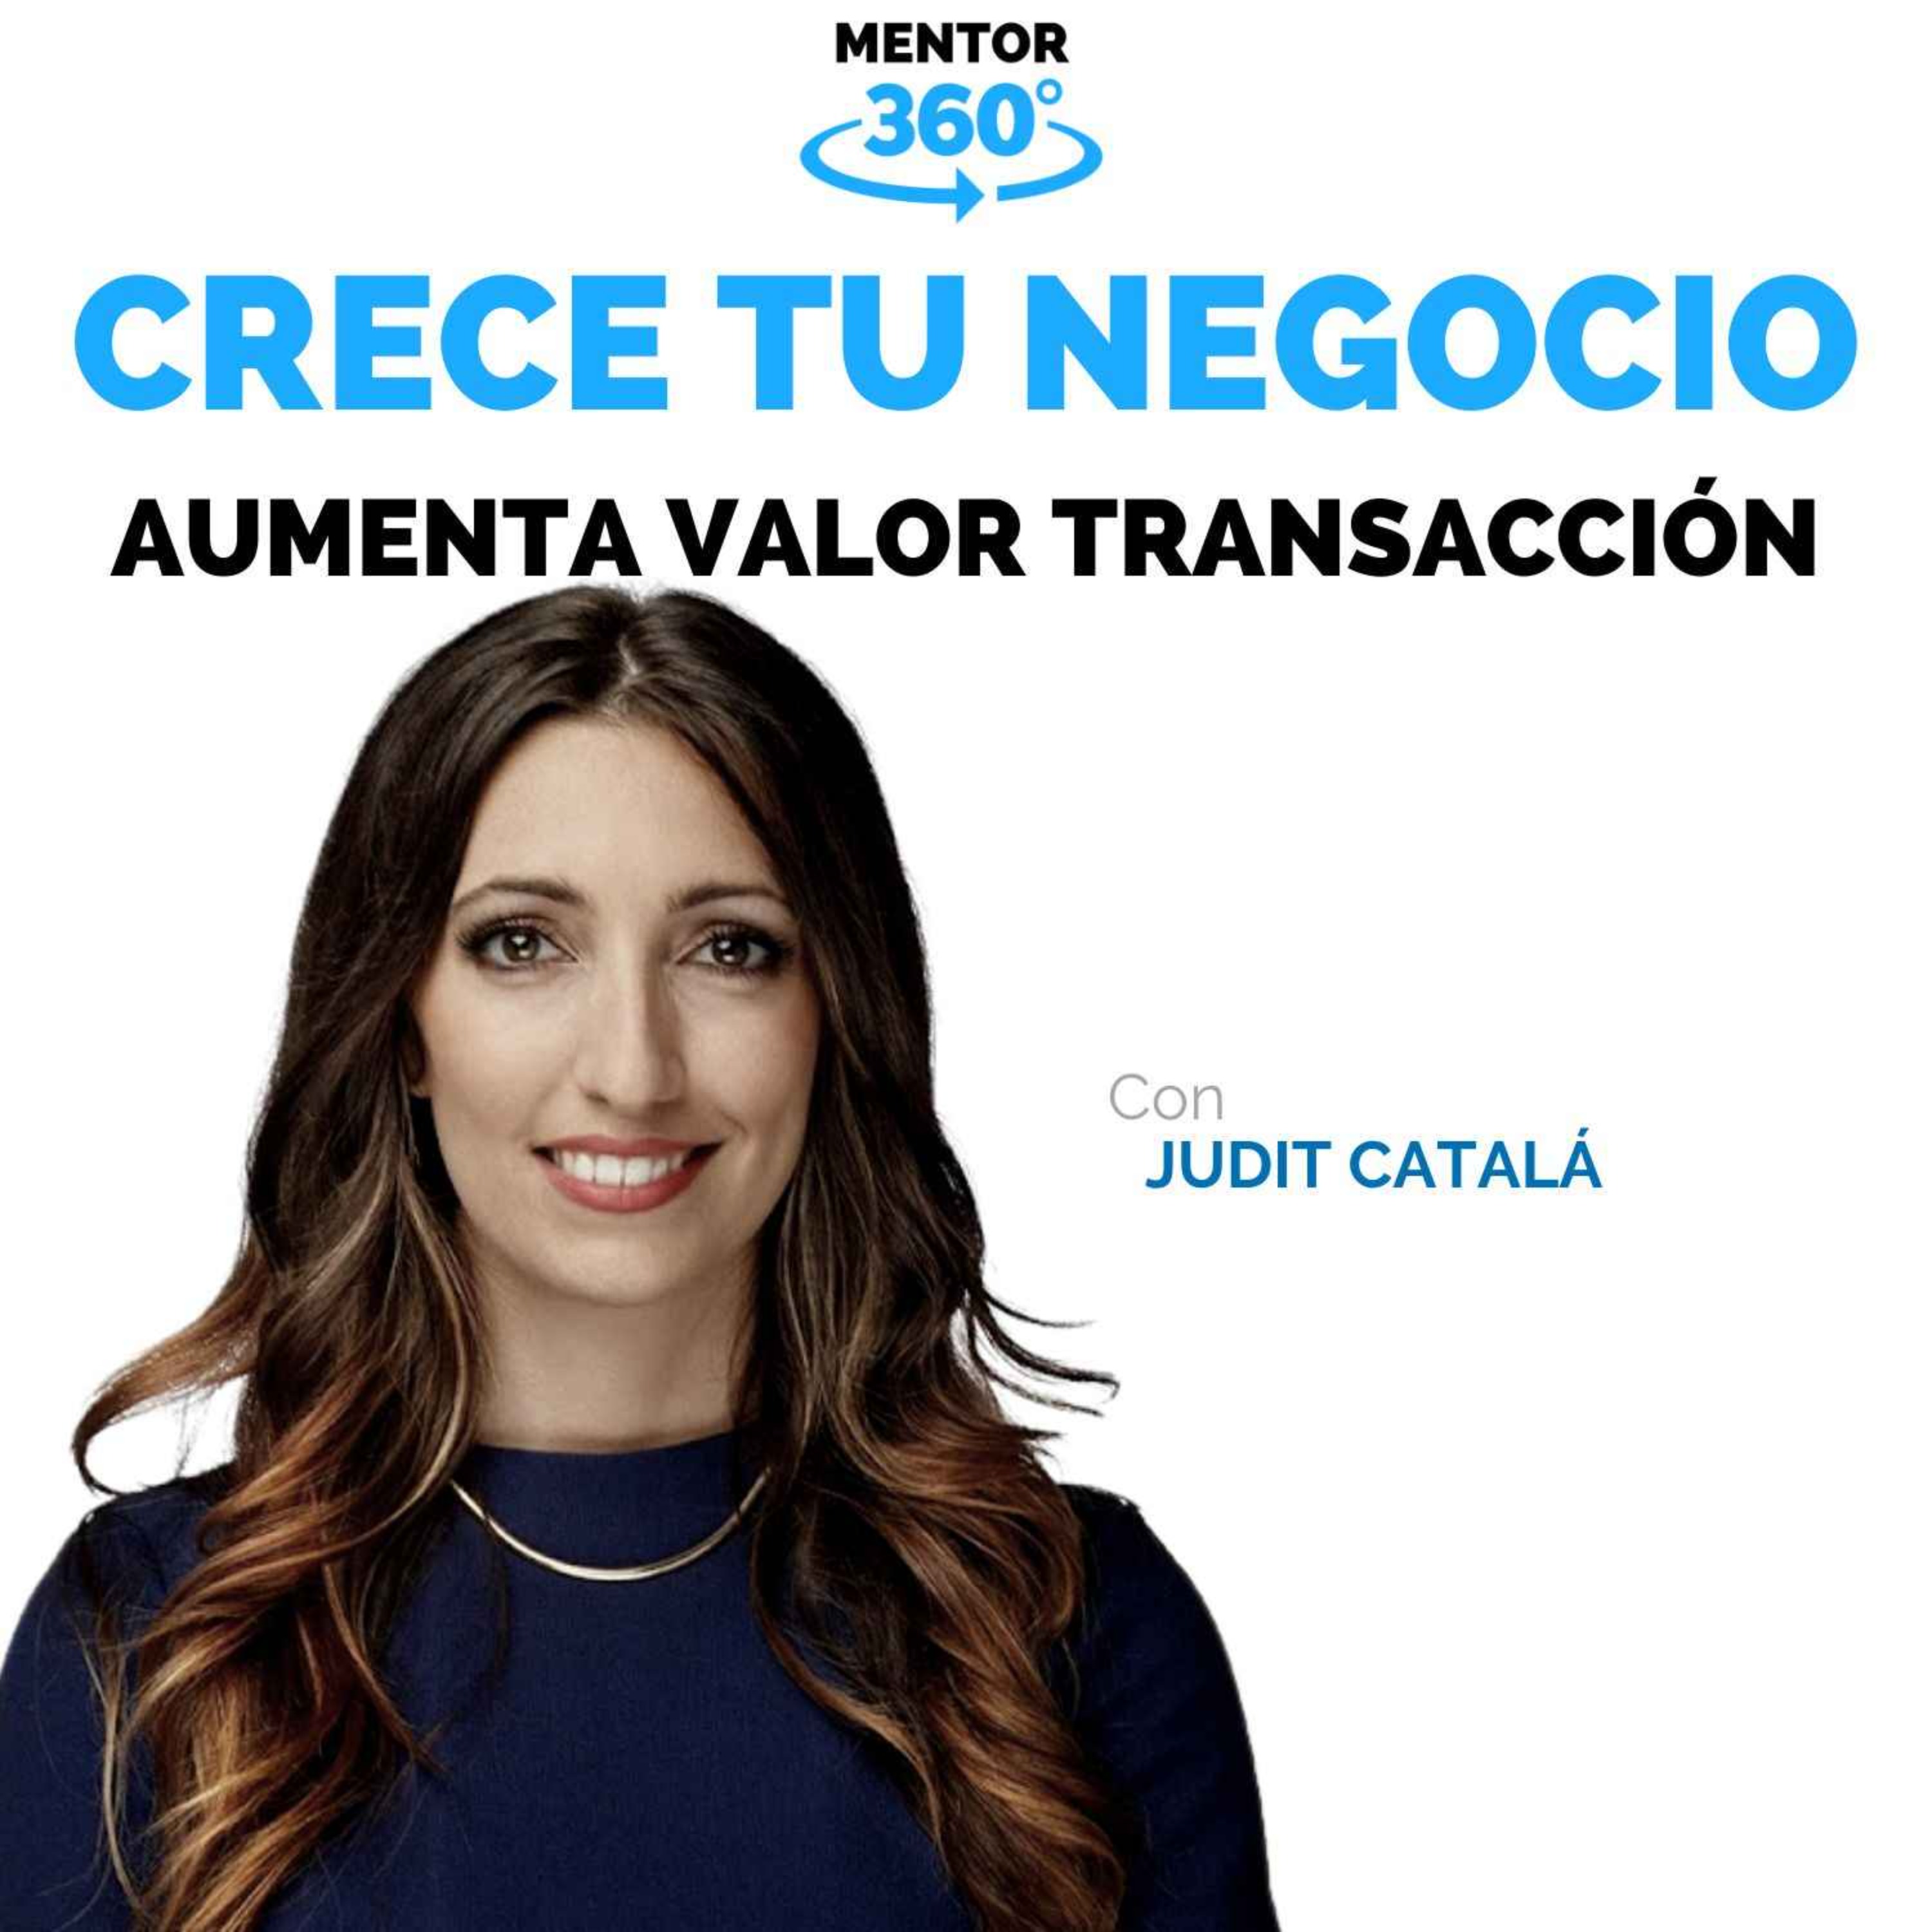 Cómo Aumentar el Valor por Transacción - Judit Catalá - Crece Tu Negocio - MENTOR360